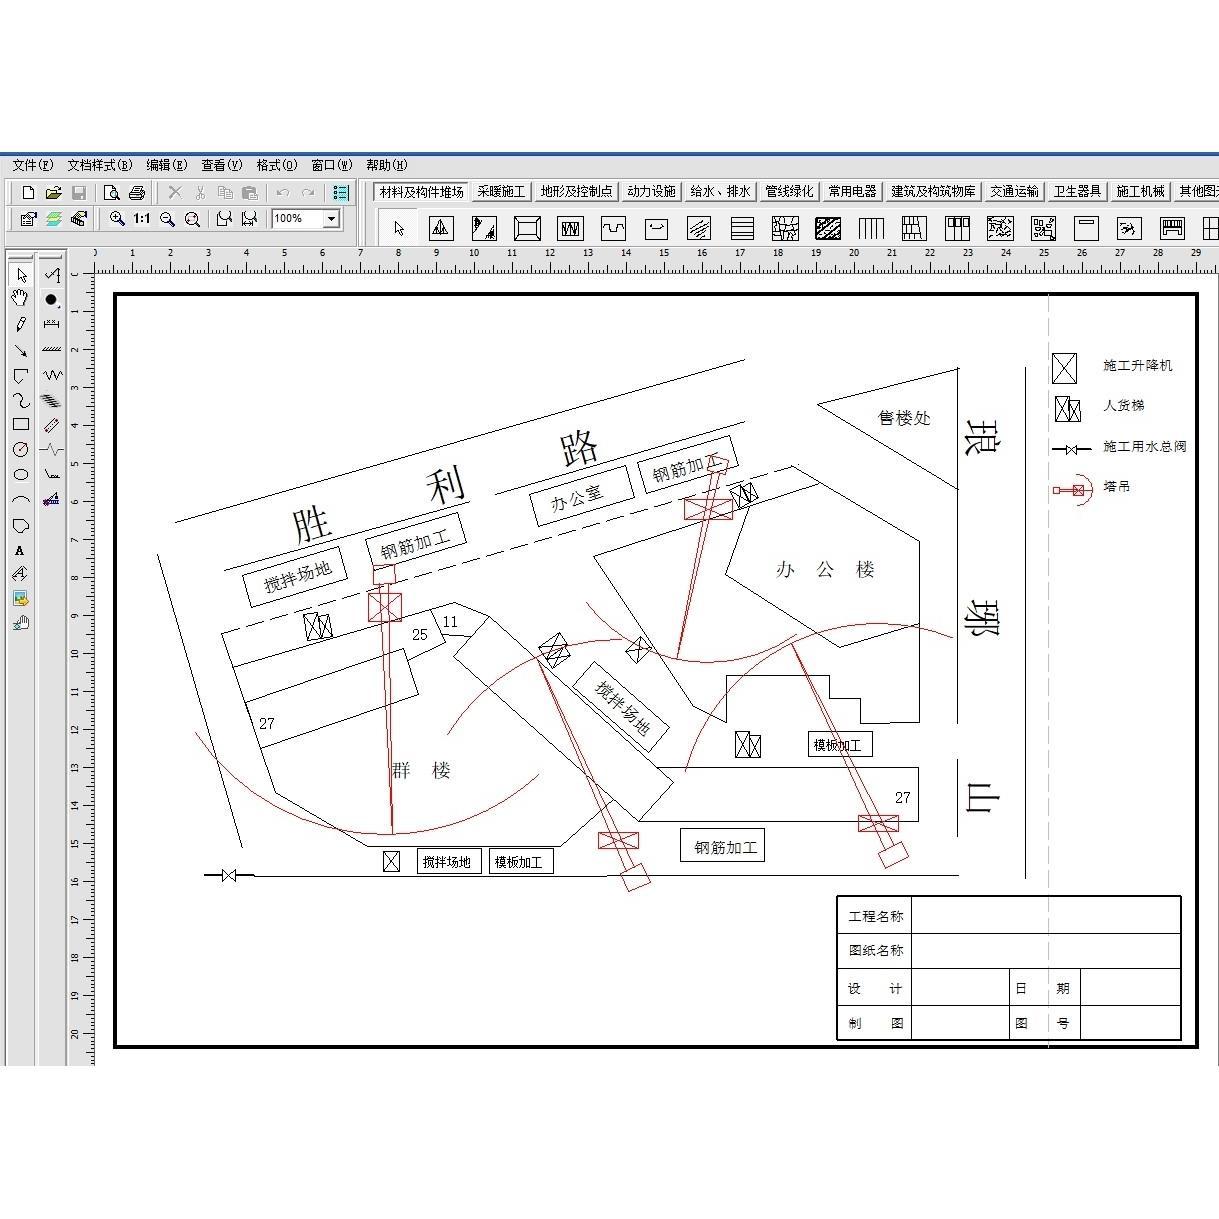 施工现场平面布置图绘制软件专业投标施工组织设计施工图平面图